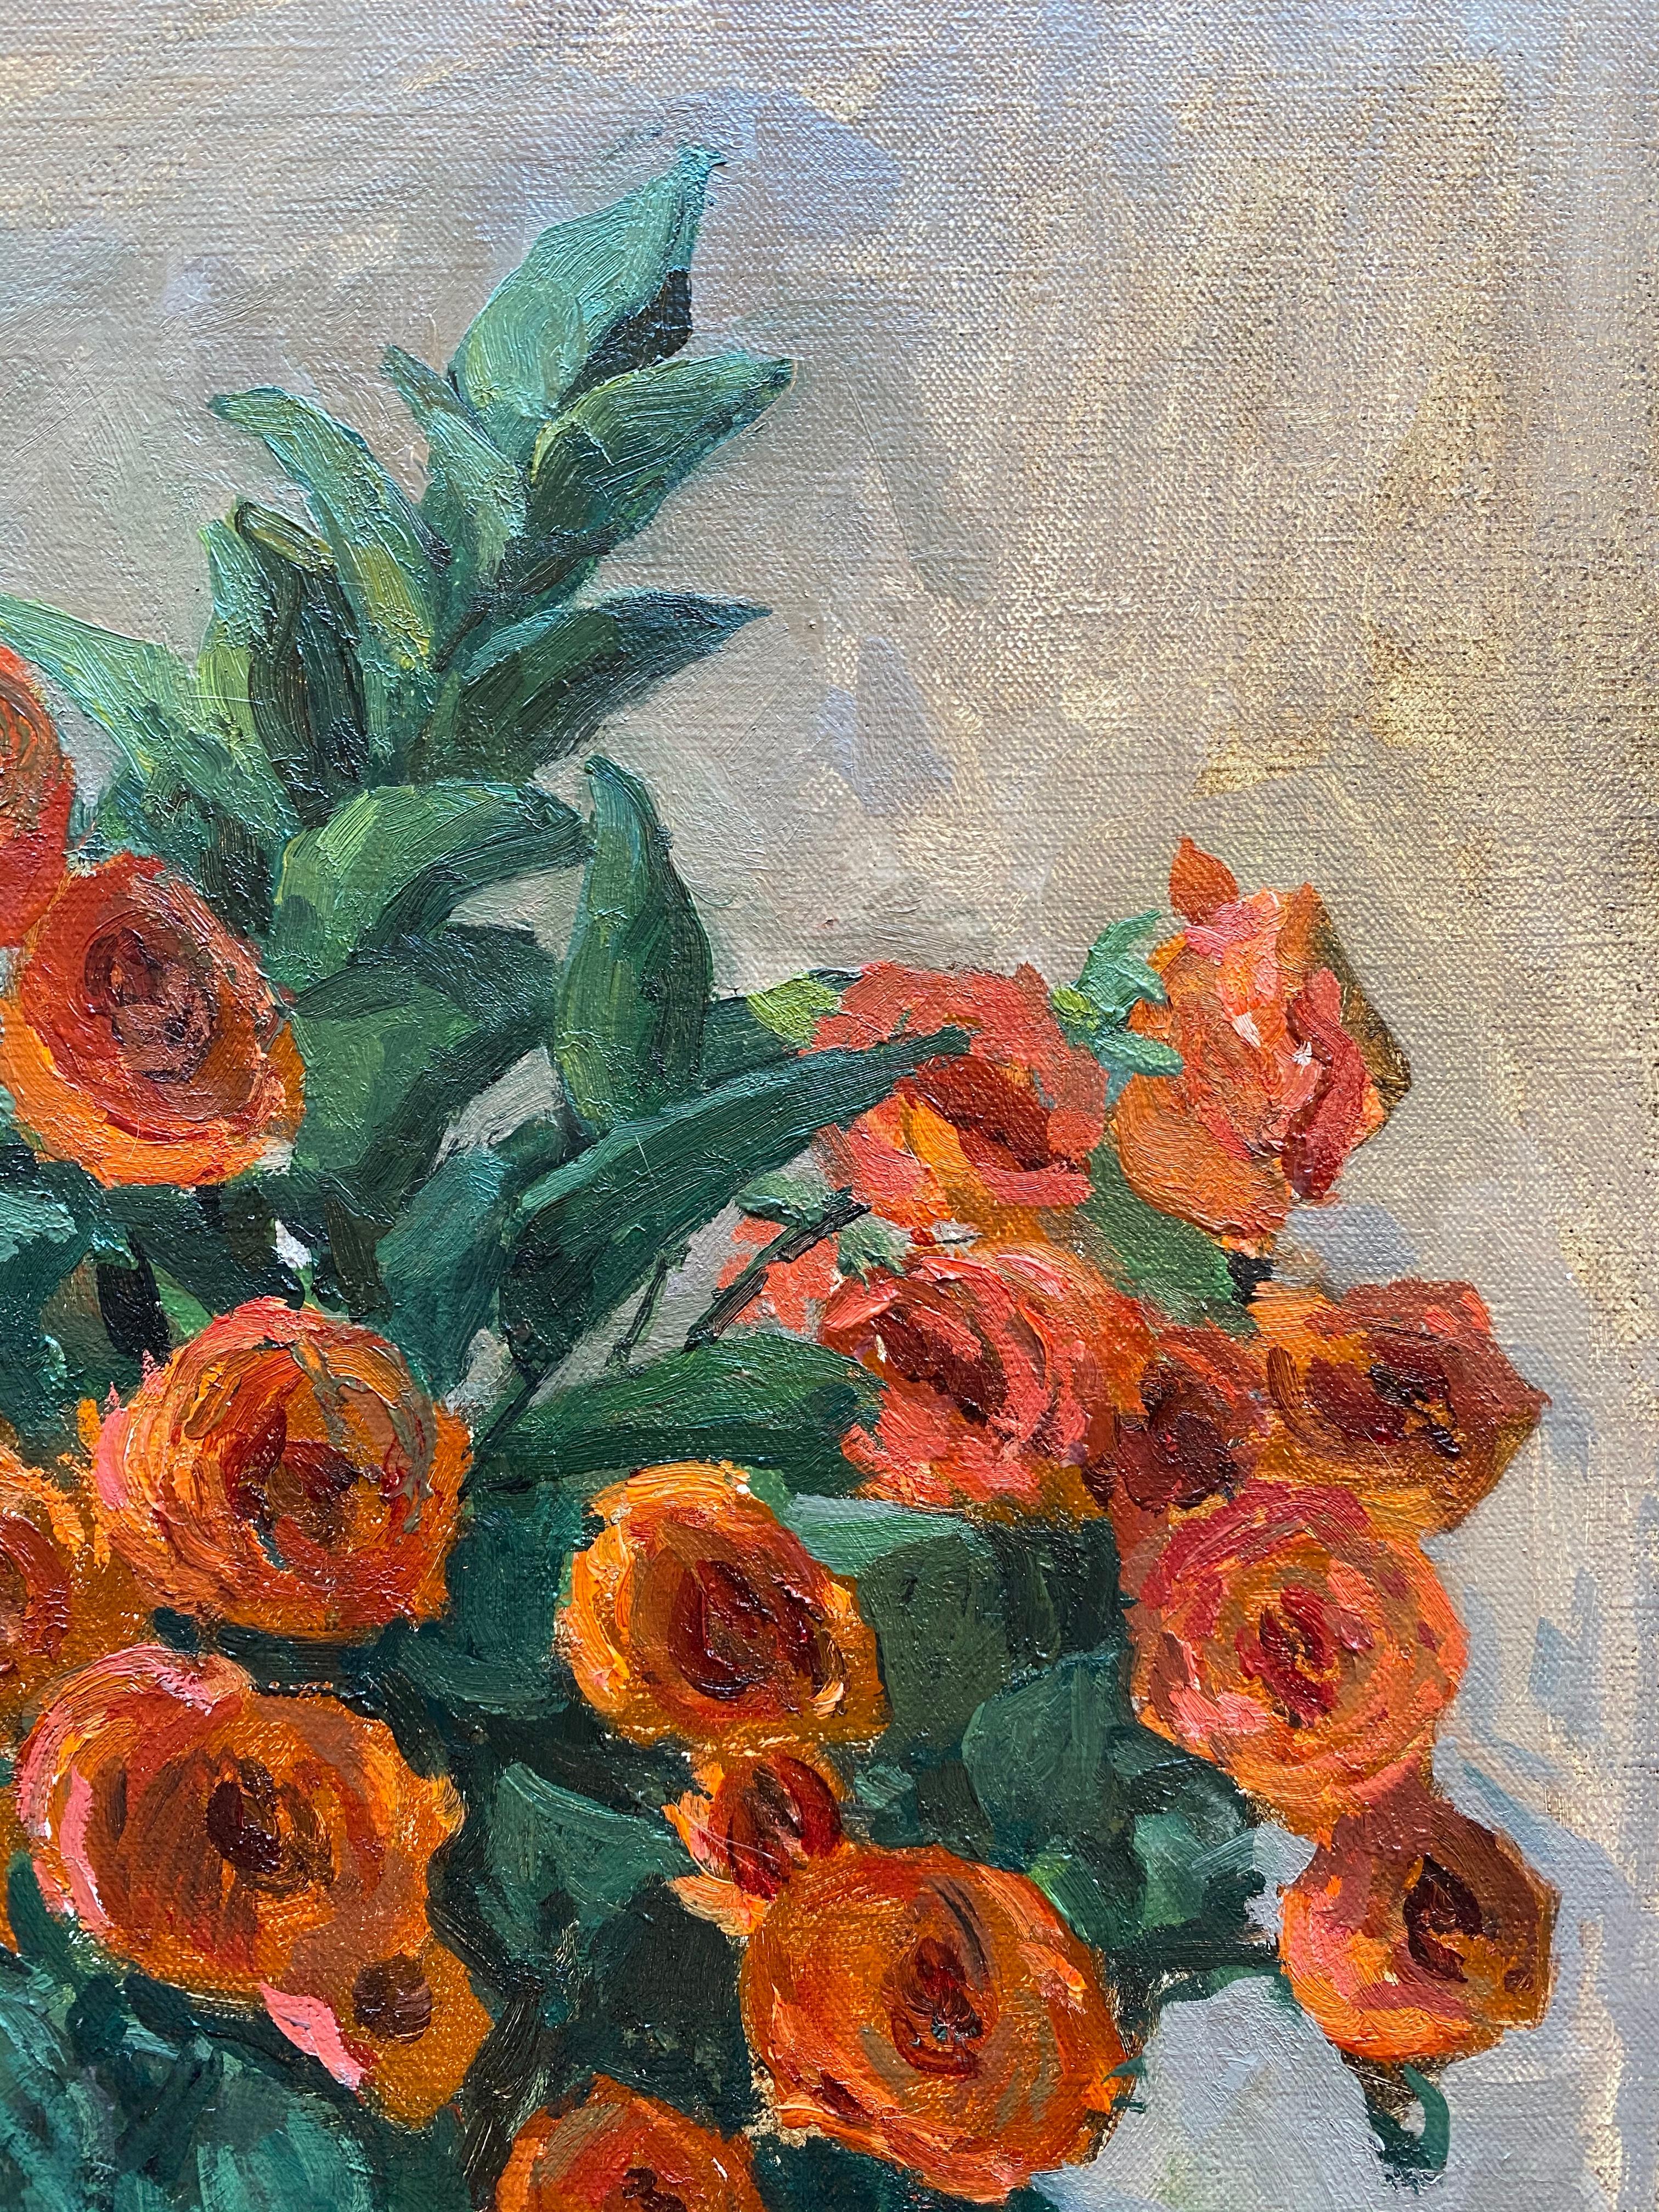 Orange Roses 3